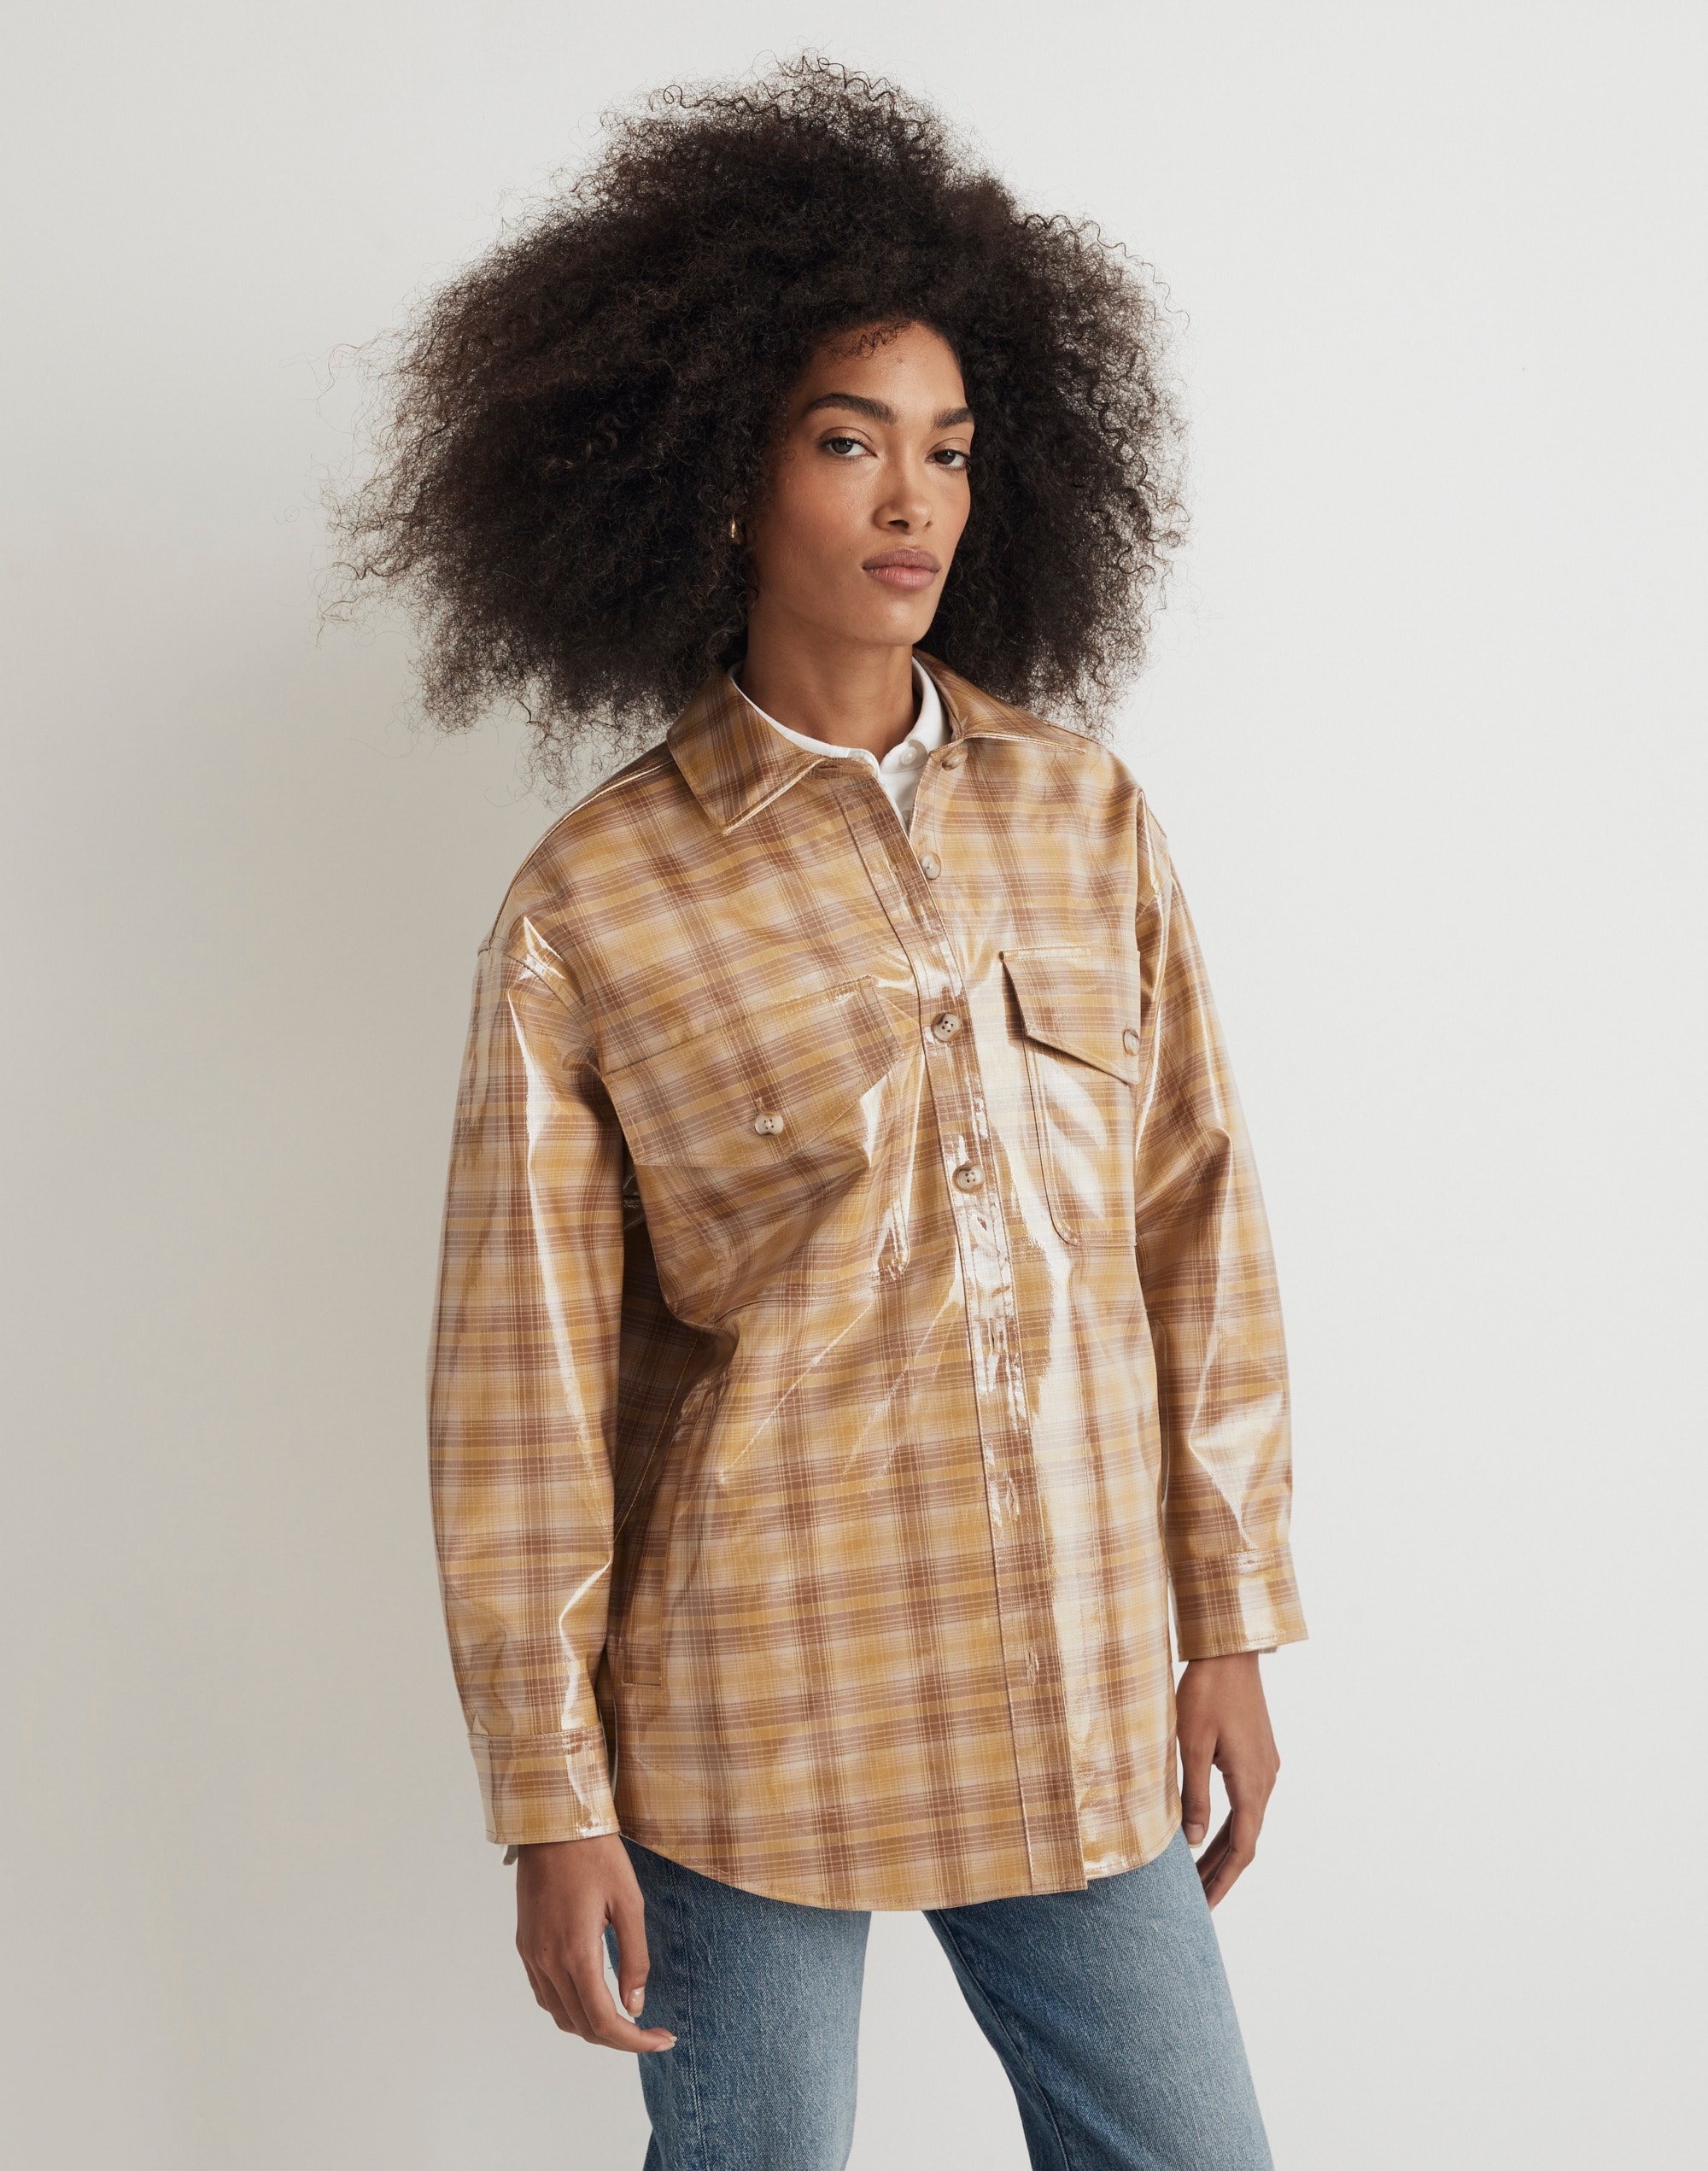 Laminated Superoversized Shirt-Jacket Yarn-Dyed Plaid